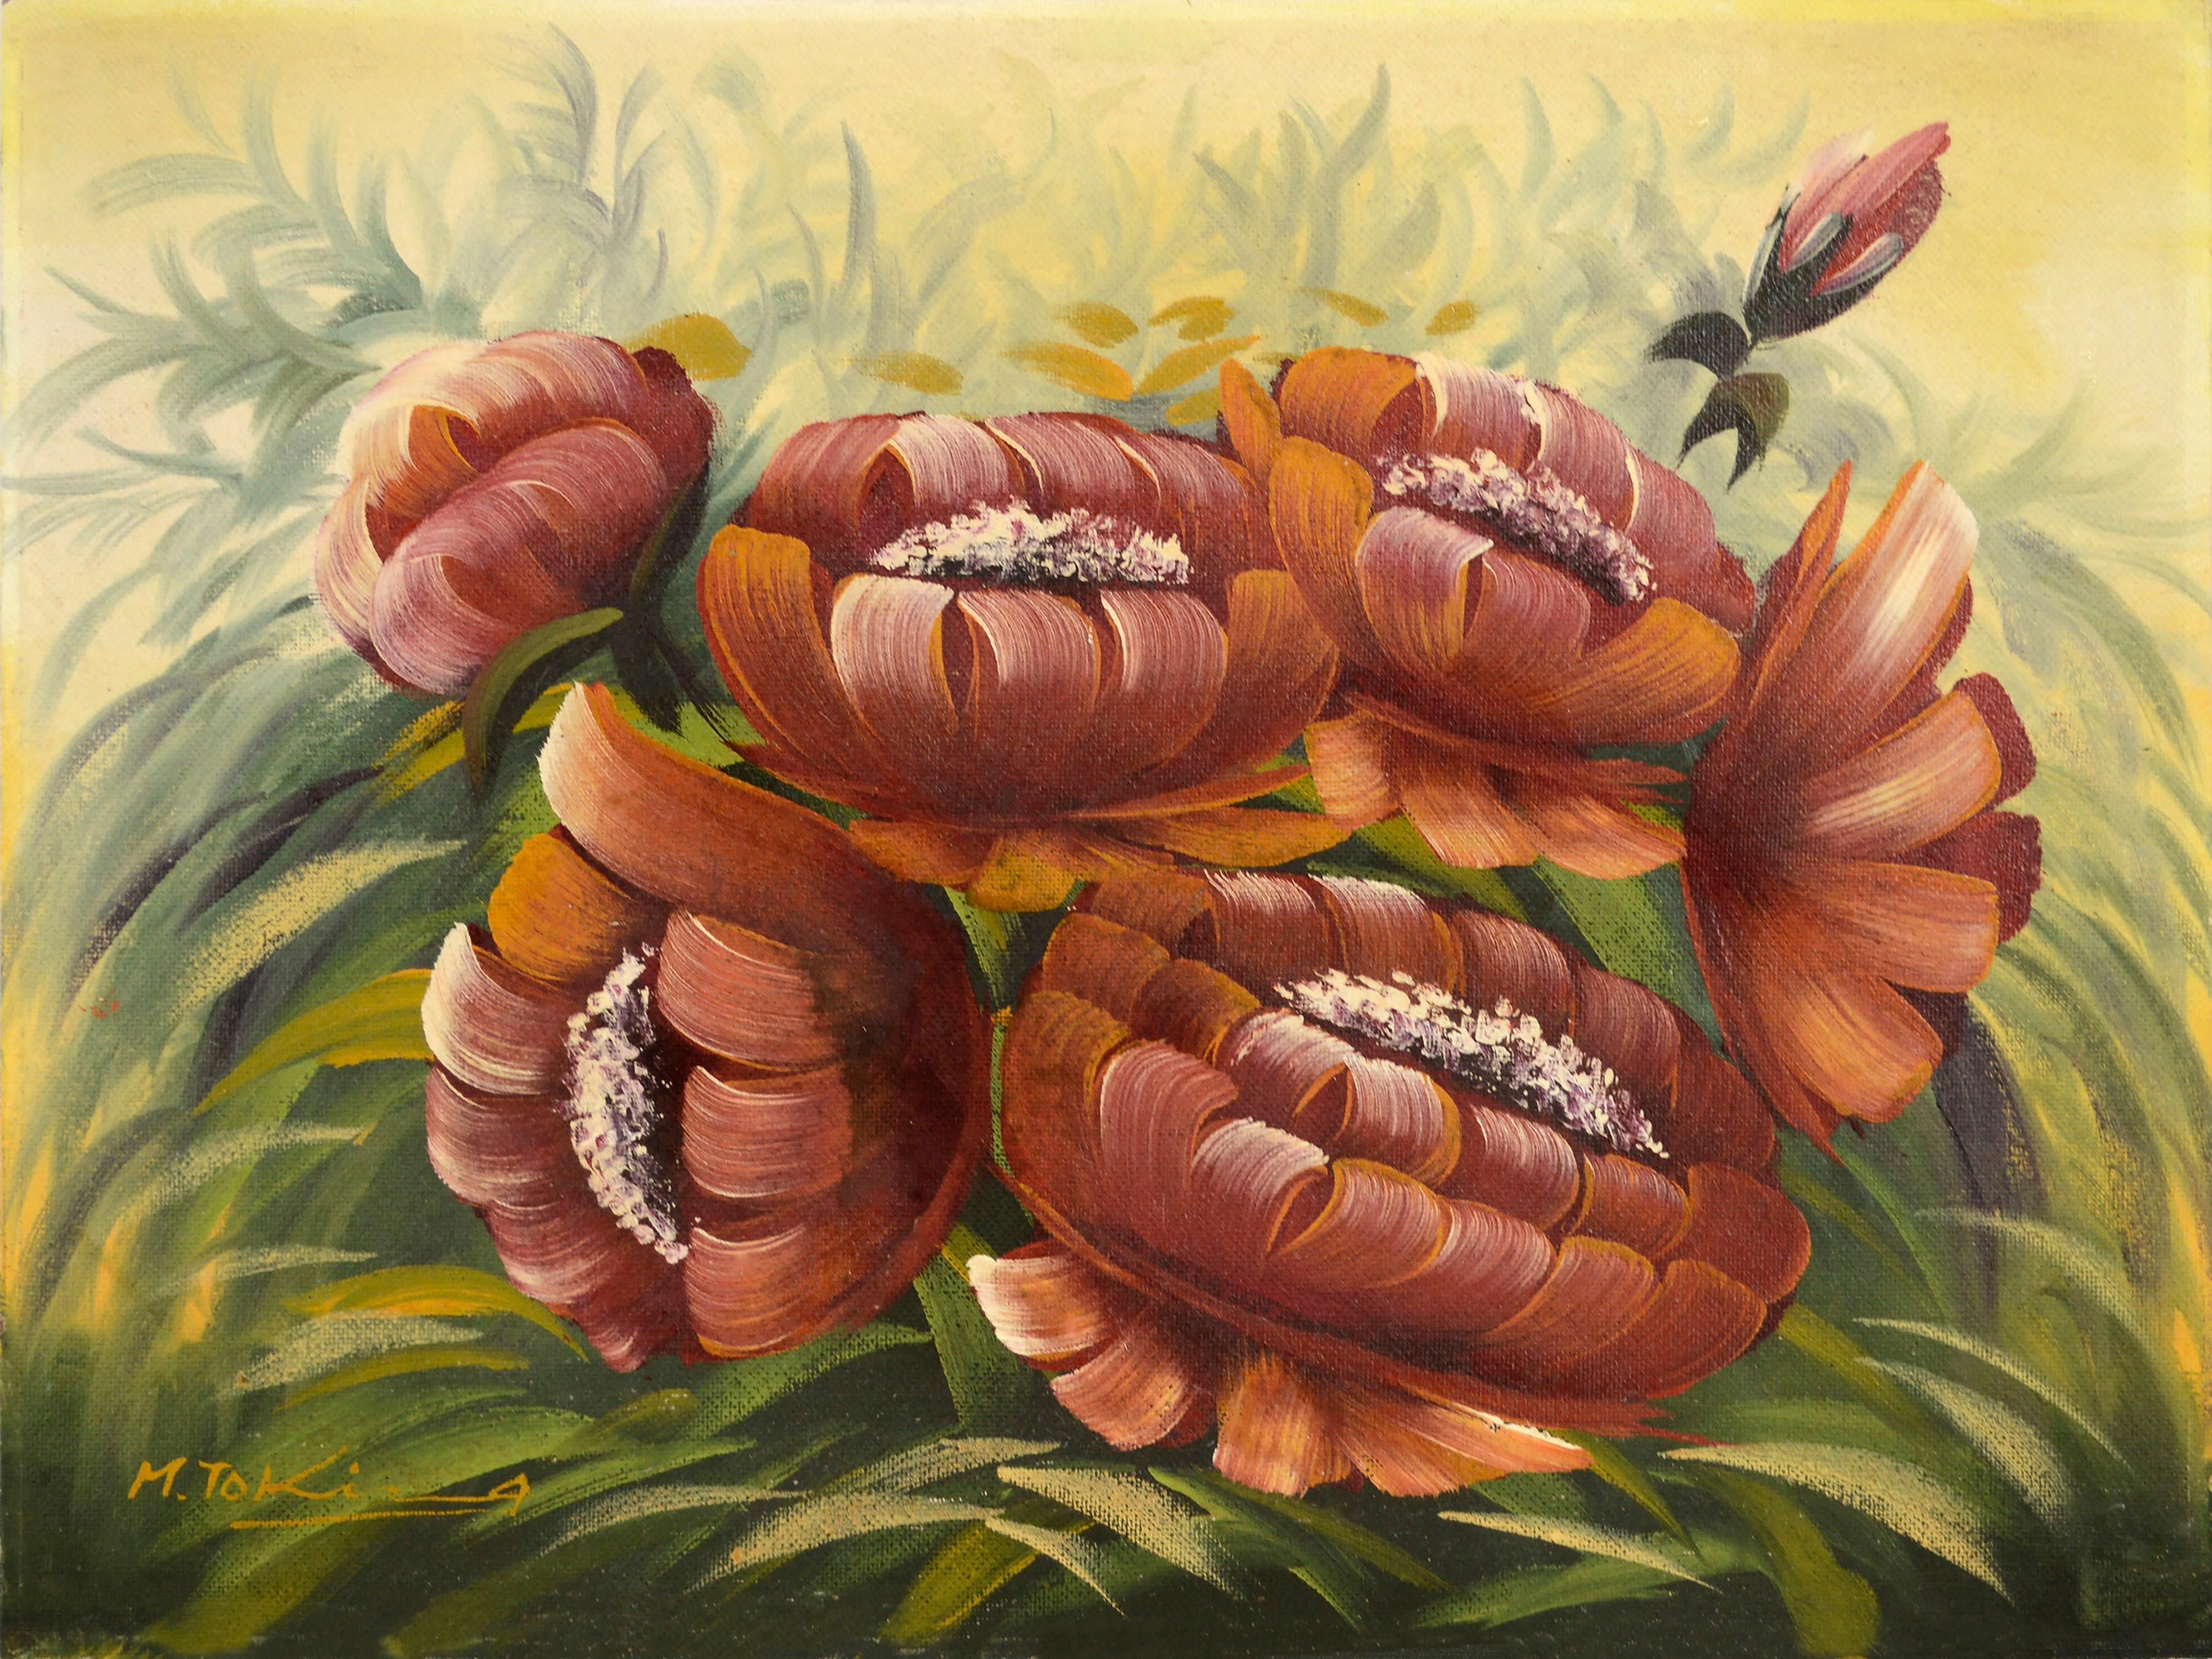 Still-Life Painting M Tokira - Peupilles rouges, nature morte florale vintage de jardin botanique